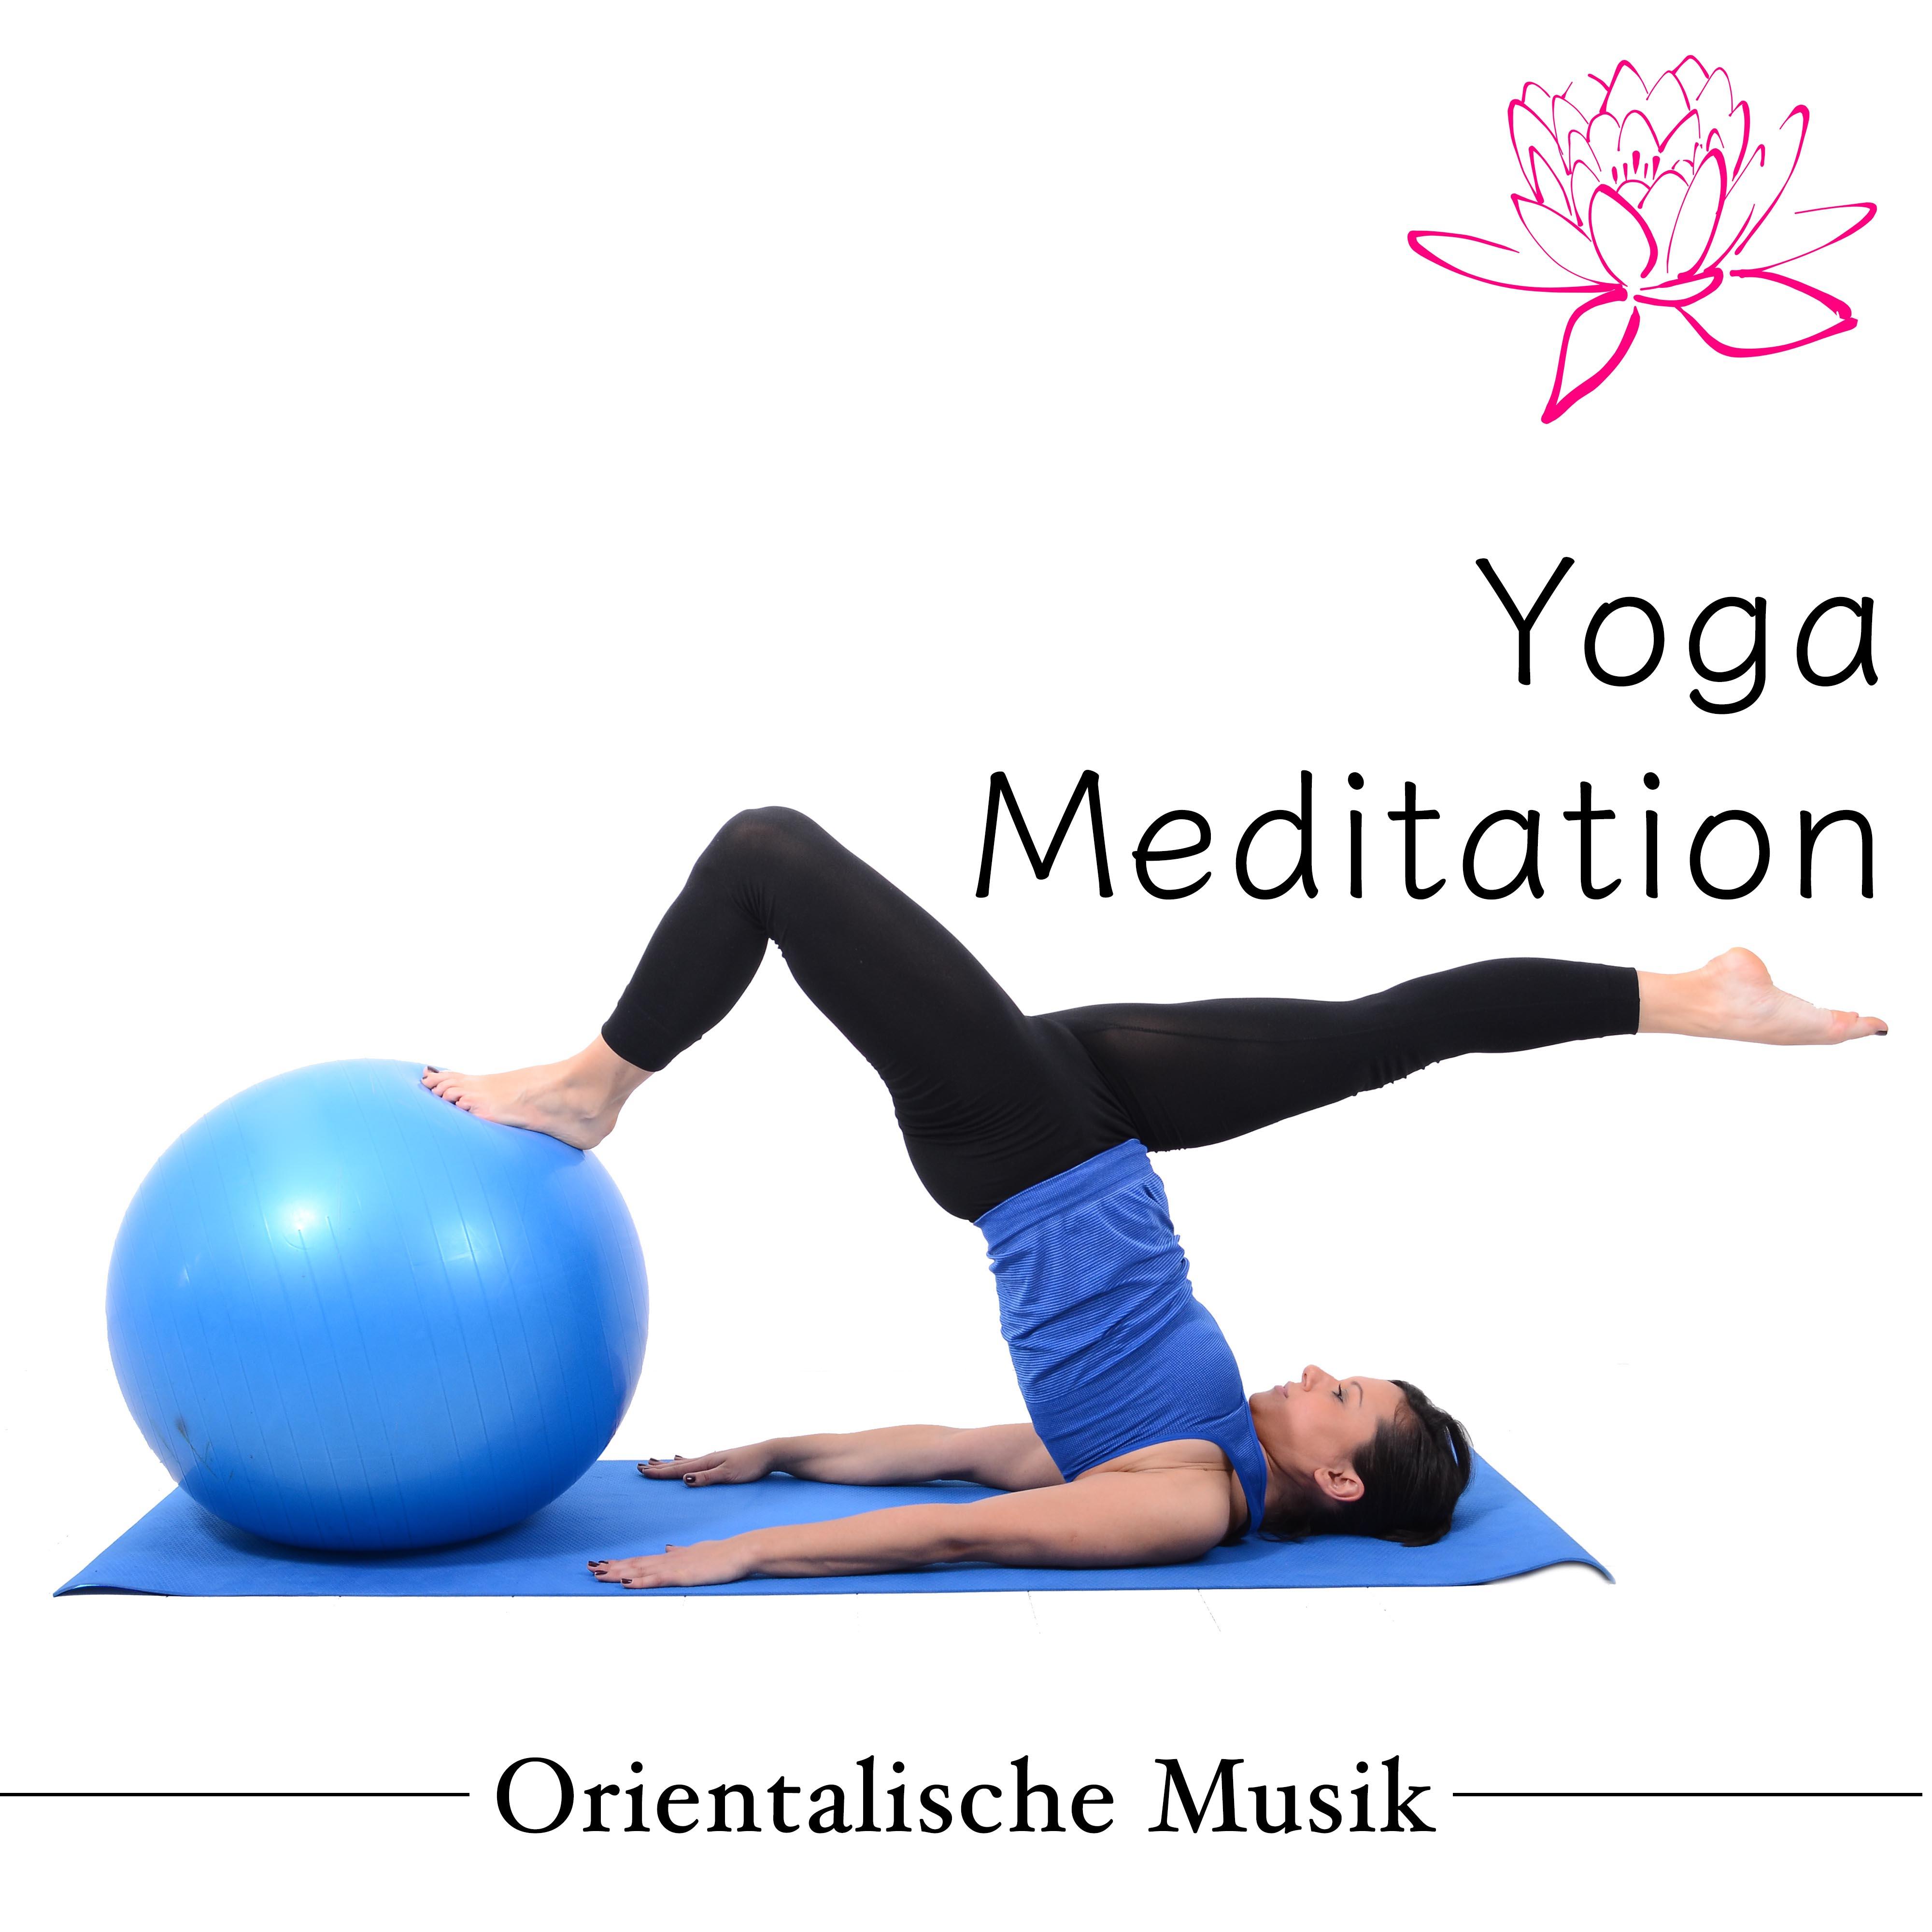 Yoga Meditation - Orientalische Musik für Yoga Übungen und Yoga Ausbildung